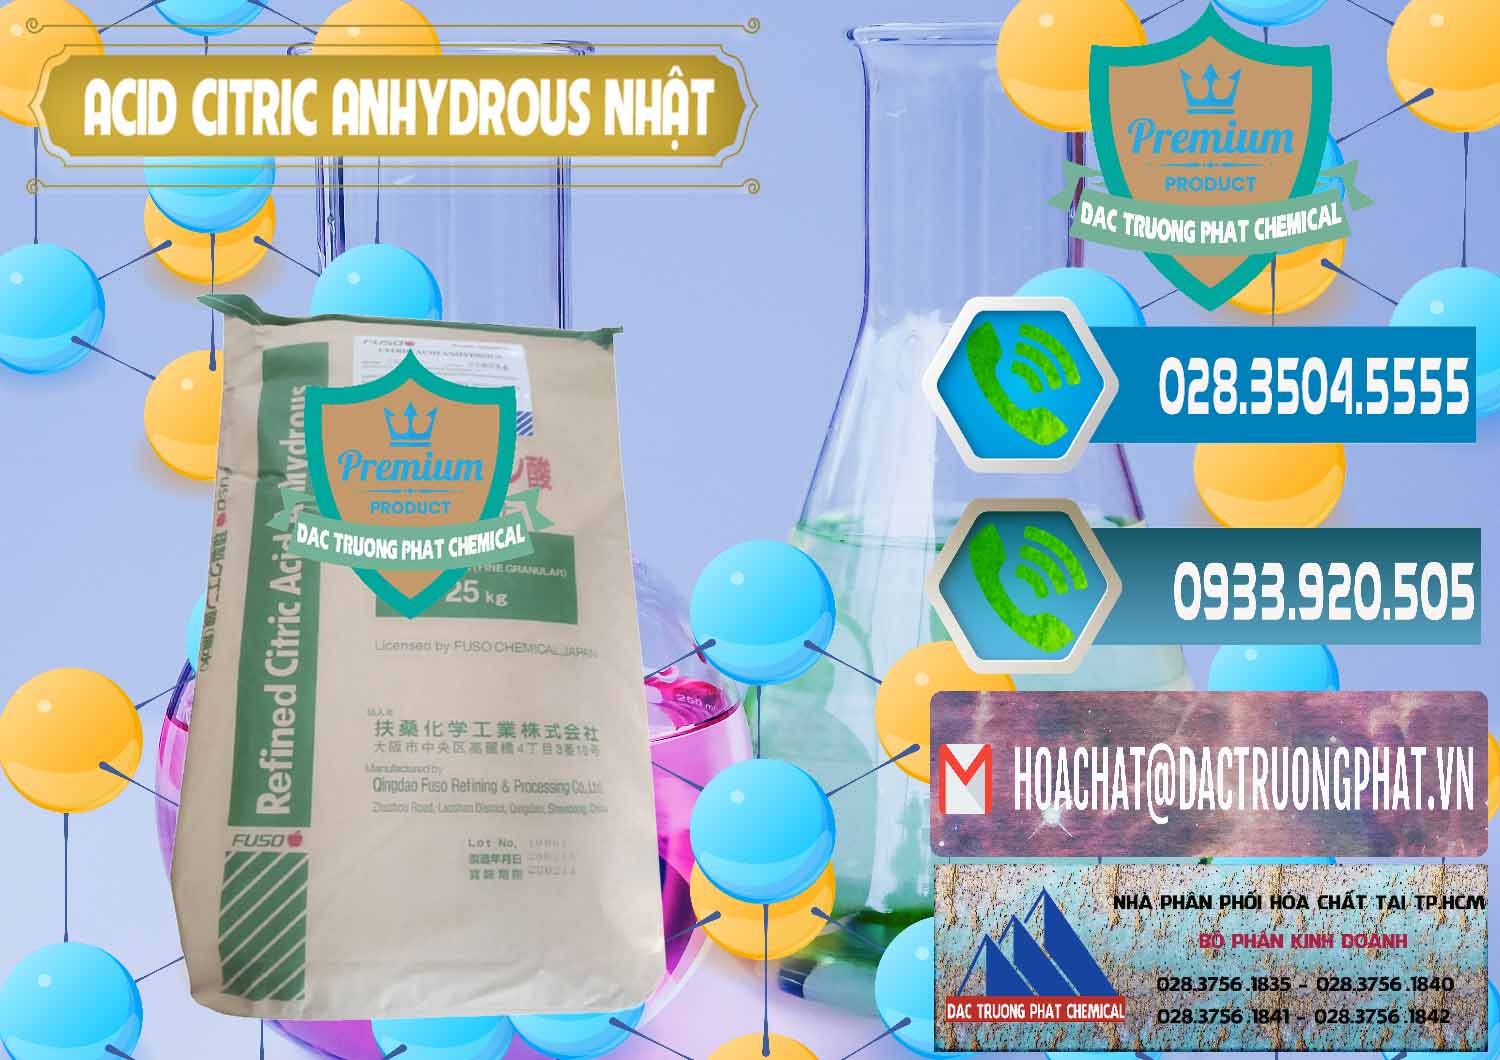 Nơi chuyên kinh doanh và bán Acid Citric - Axit Citric Anhydrous FUSO Nhật Japan - 0439 - Chuyên cung cấp - bán hóa chất tại TP.HCM - congtyhoachat.net